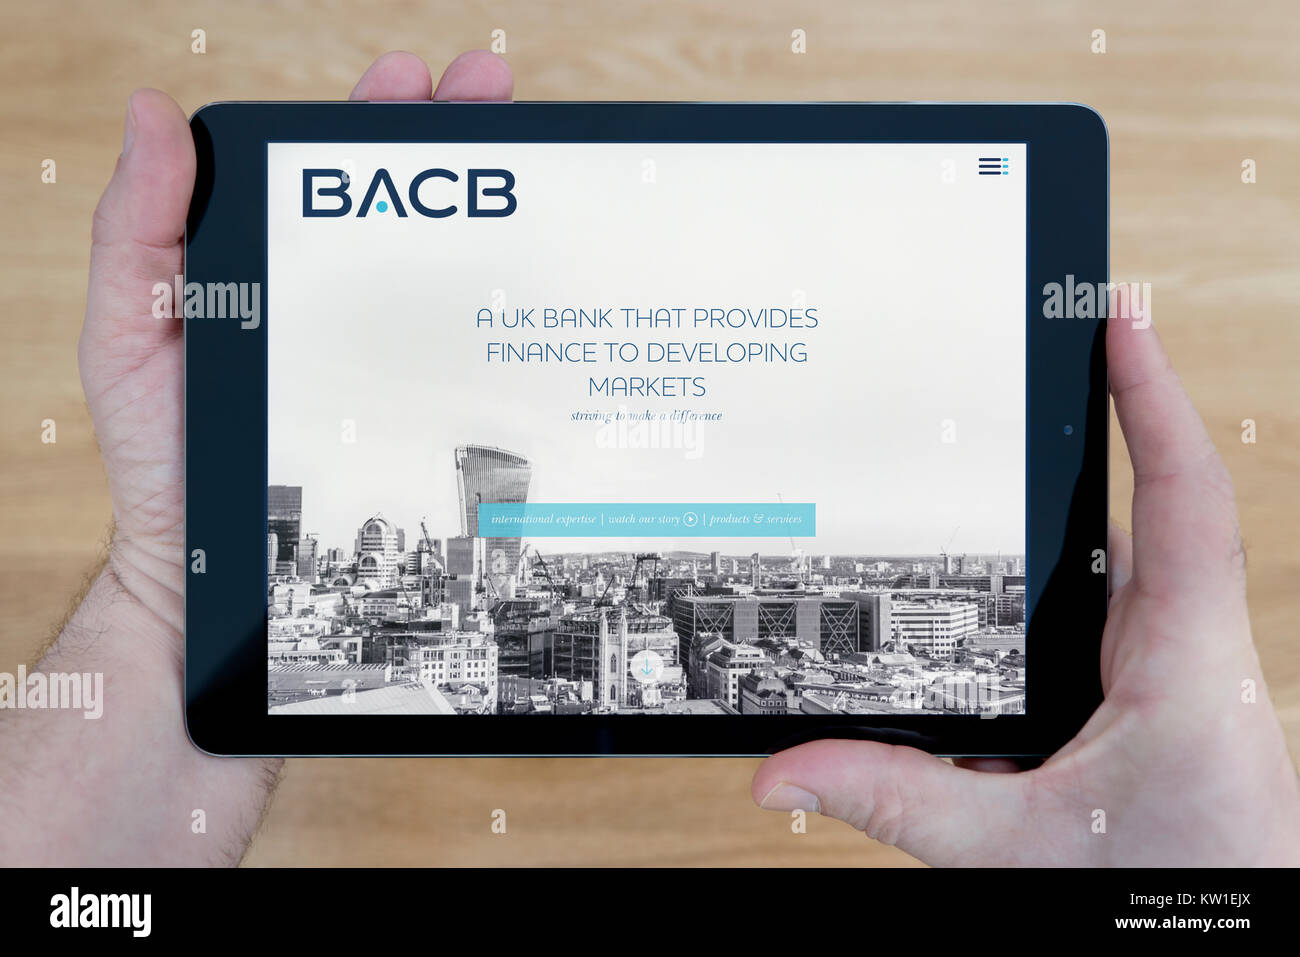 Ein Mann schaut auf die British Arab Commercial Bank (BACB) Website auf seinem iPad tablet device, Schuß gegen einen hölzernen Tischplatte Hintergrund (nur redaktionell) Stockfoto